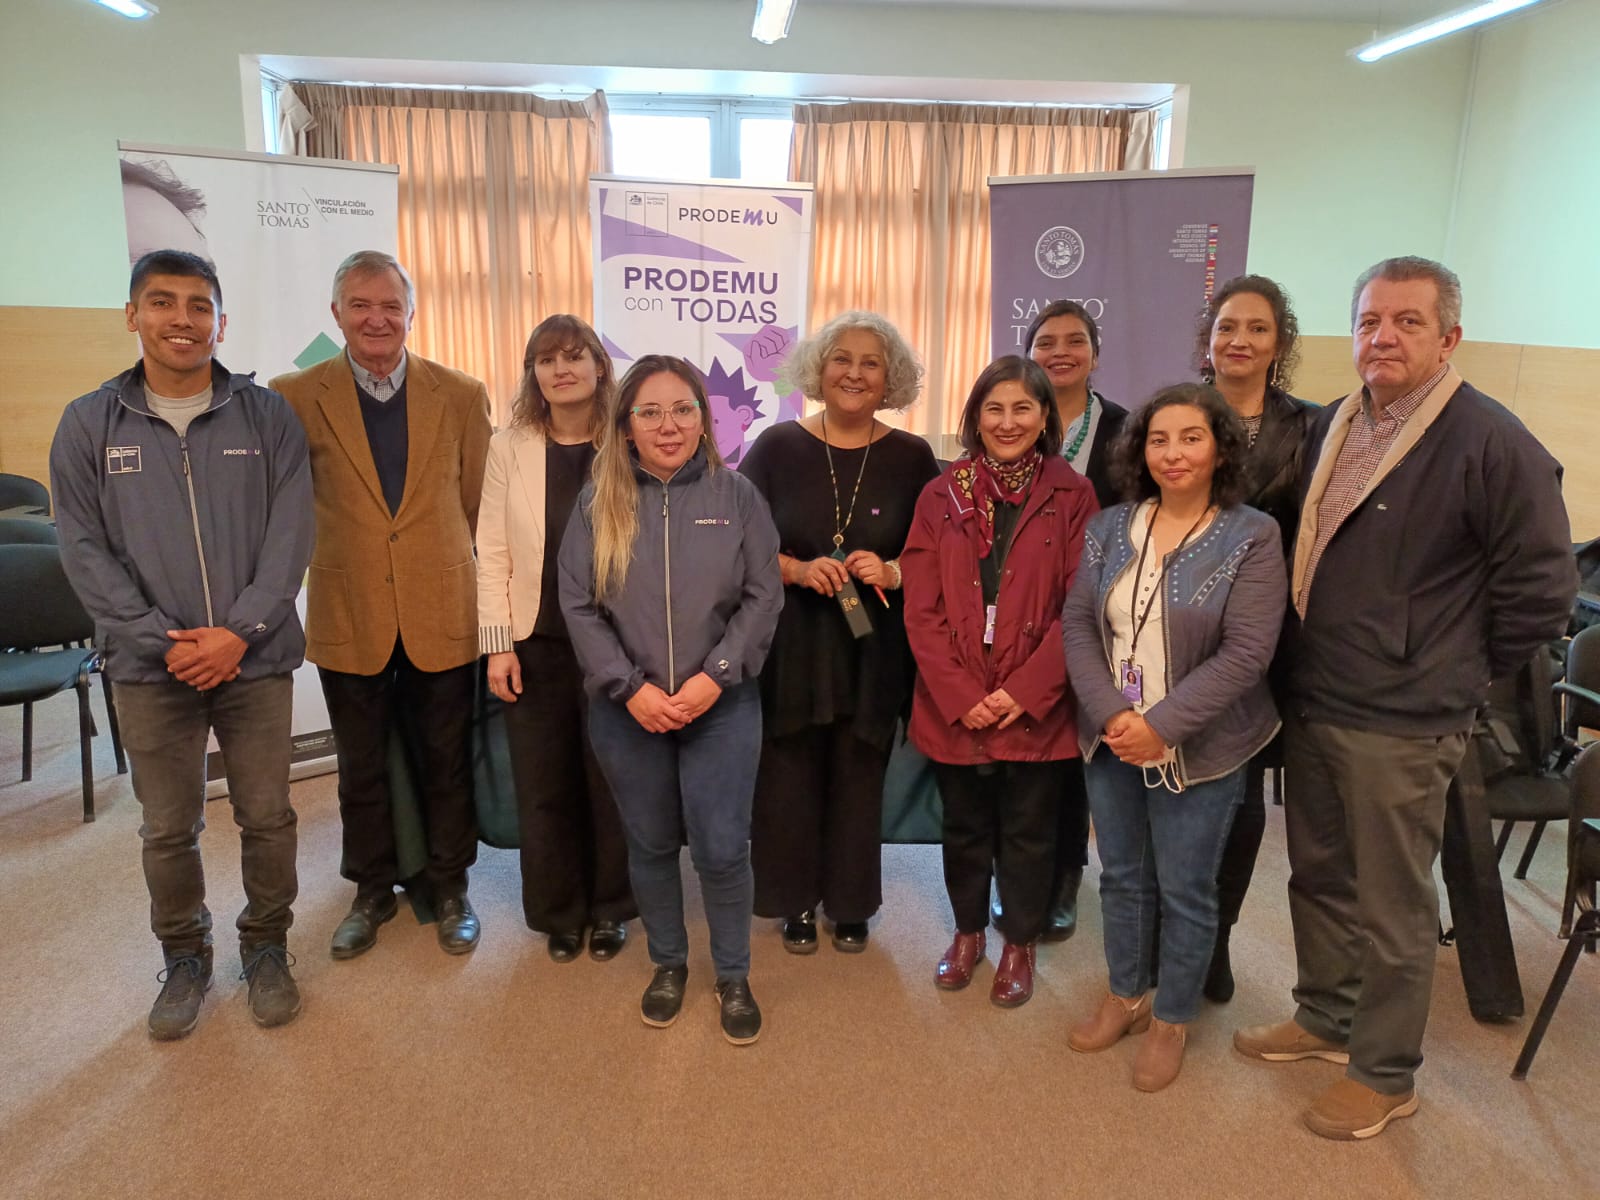 Santo Tomás Puerto Montt y Fundación Prodemu firman convenio de colaboración en beneficio de comunidad de Alerce